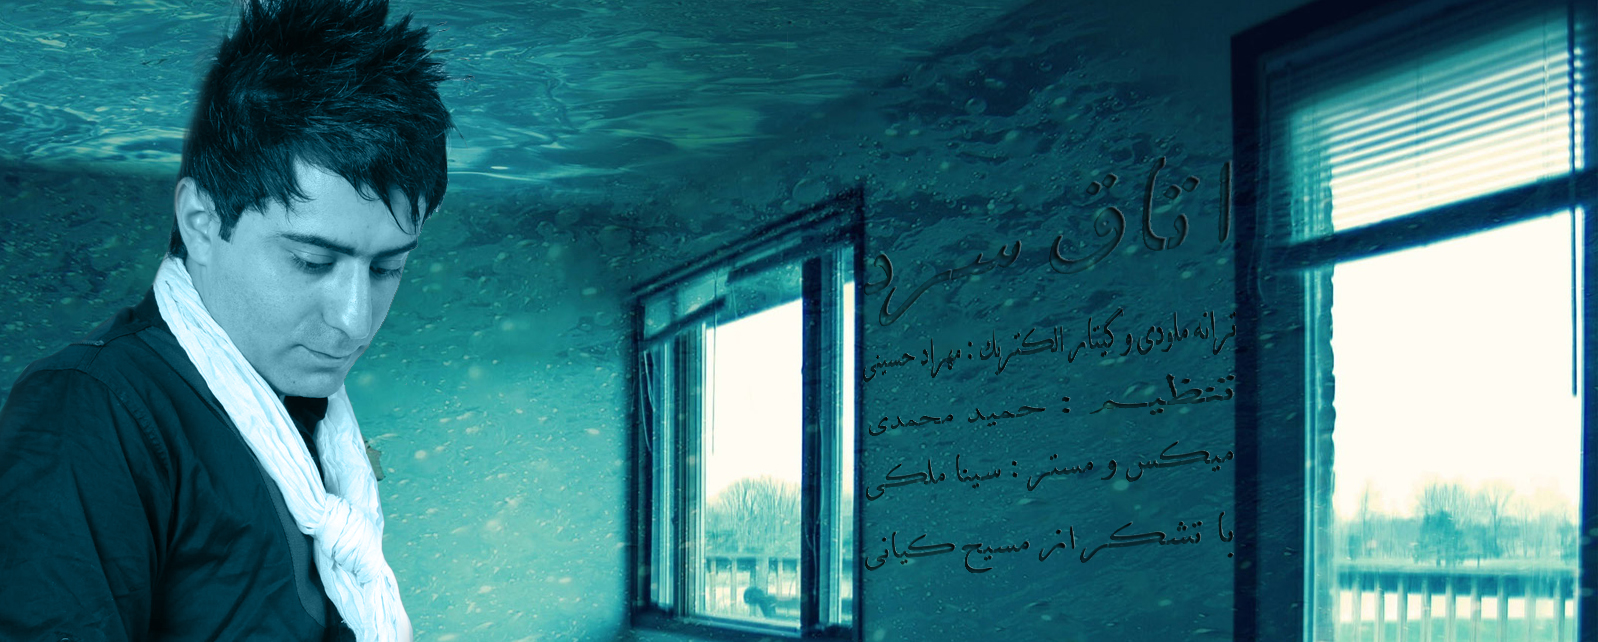 دانلود آهنگ جدید و فوق العاده زیبای مهراد حسینی به نام اتاق سرد